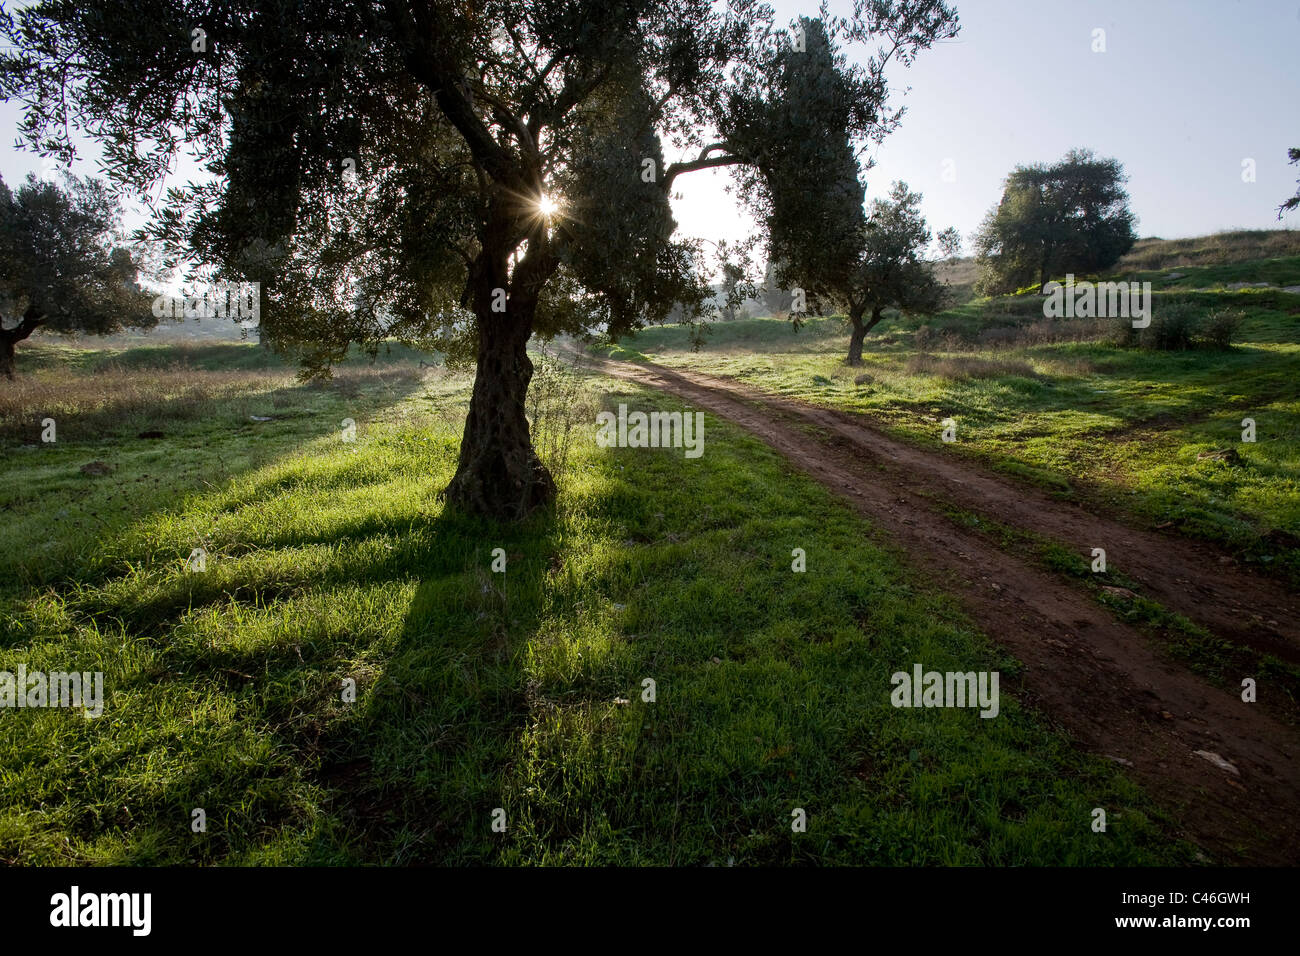 Fotografía de una arboleda en Galilea. Foto de stock